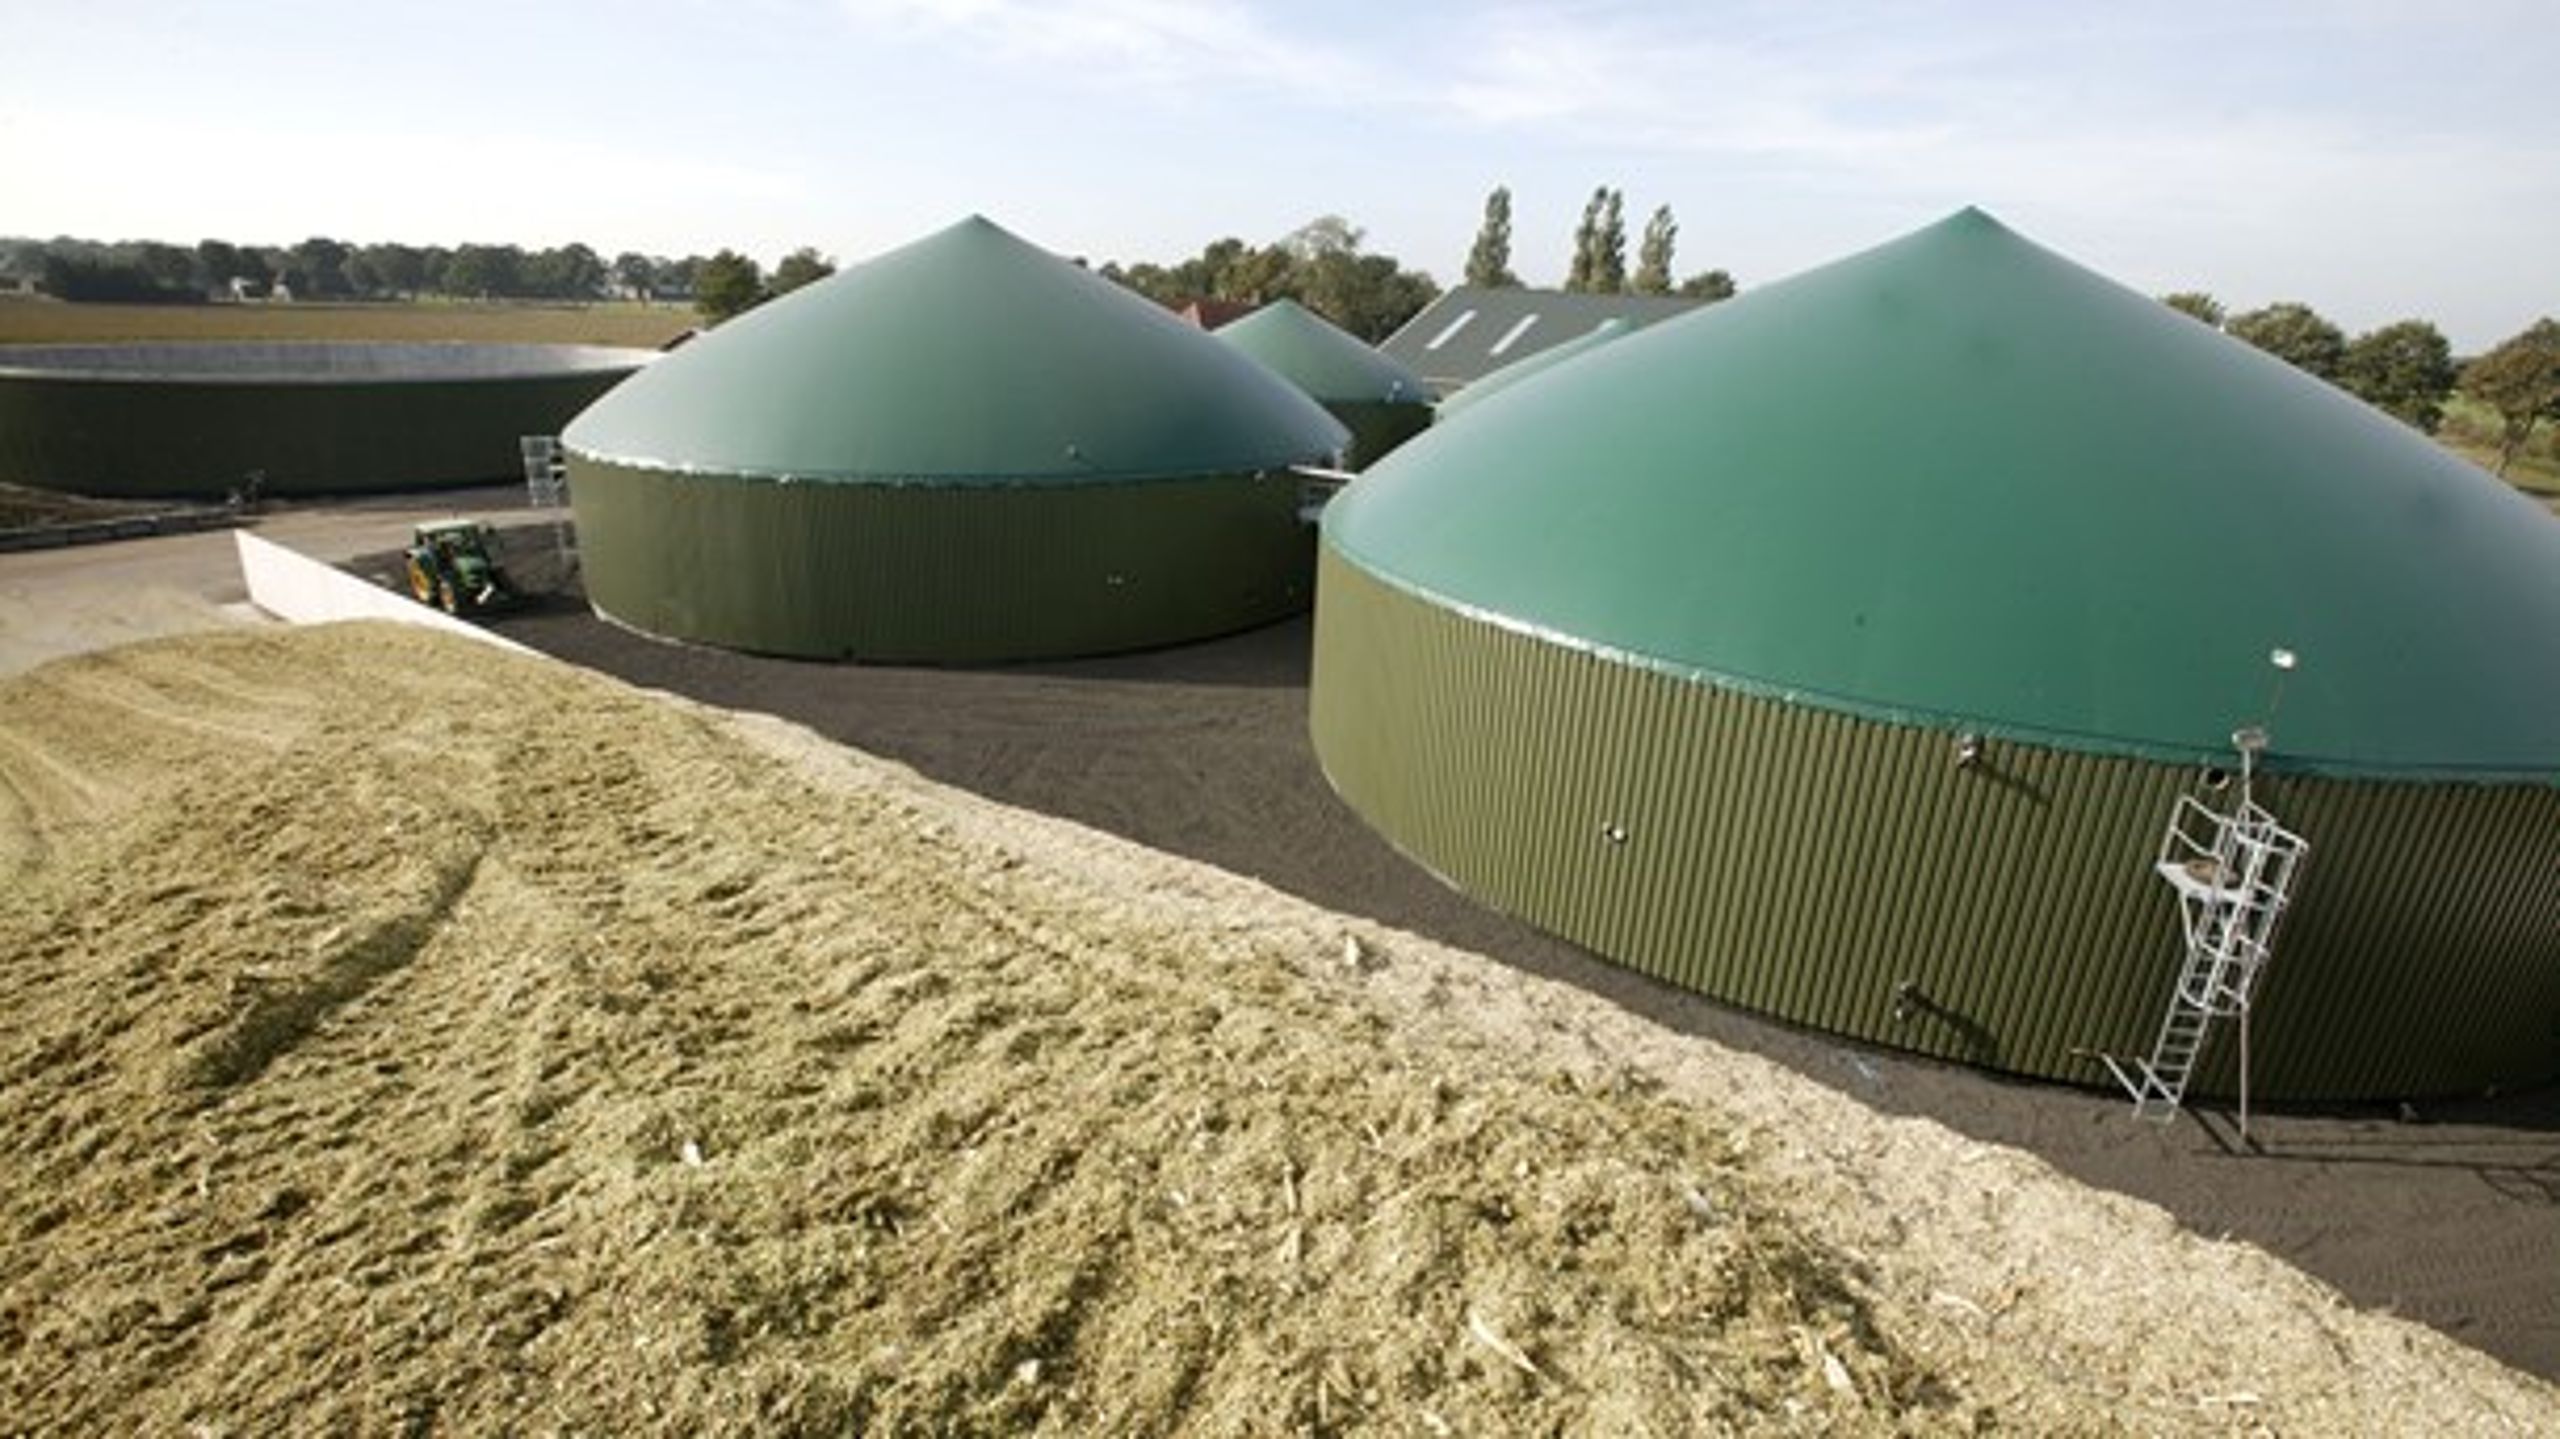 Der kan være positive synergier ved at placere biogasanlæg på landbrugsjorde, påpeger Teknologirådet.